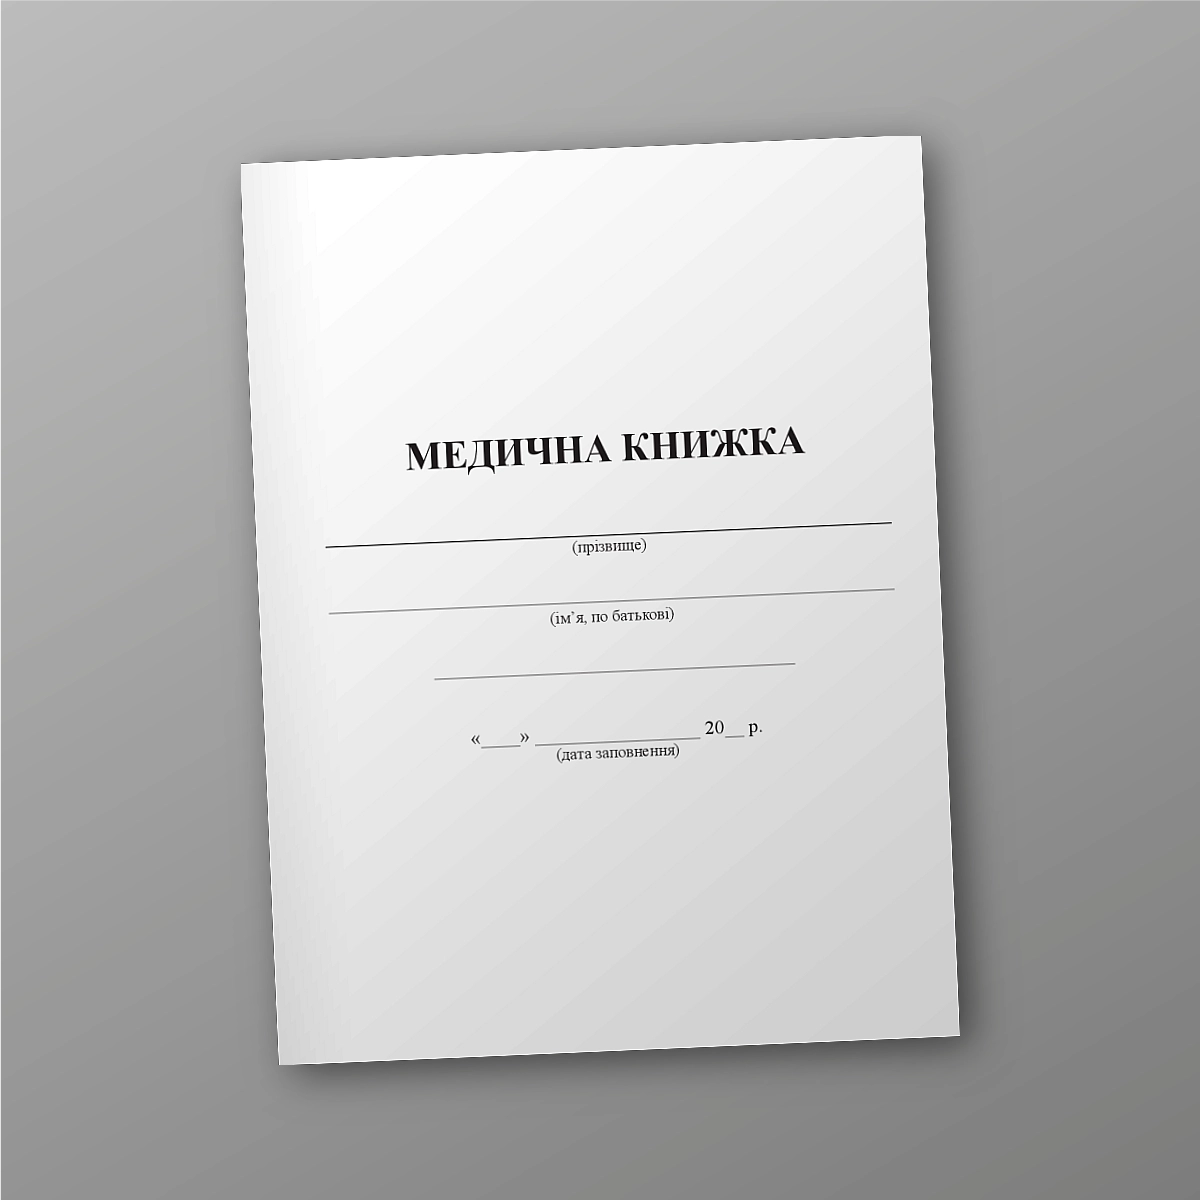 Medical Book | PrintTo: